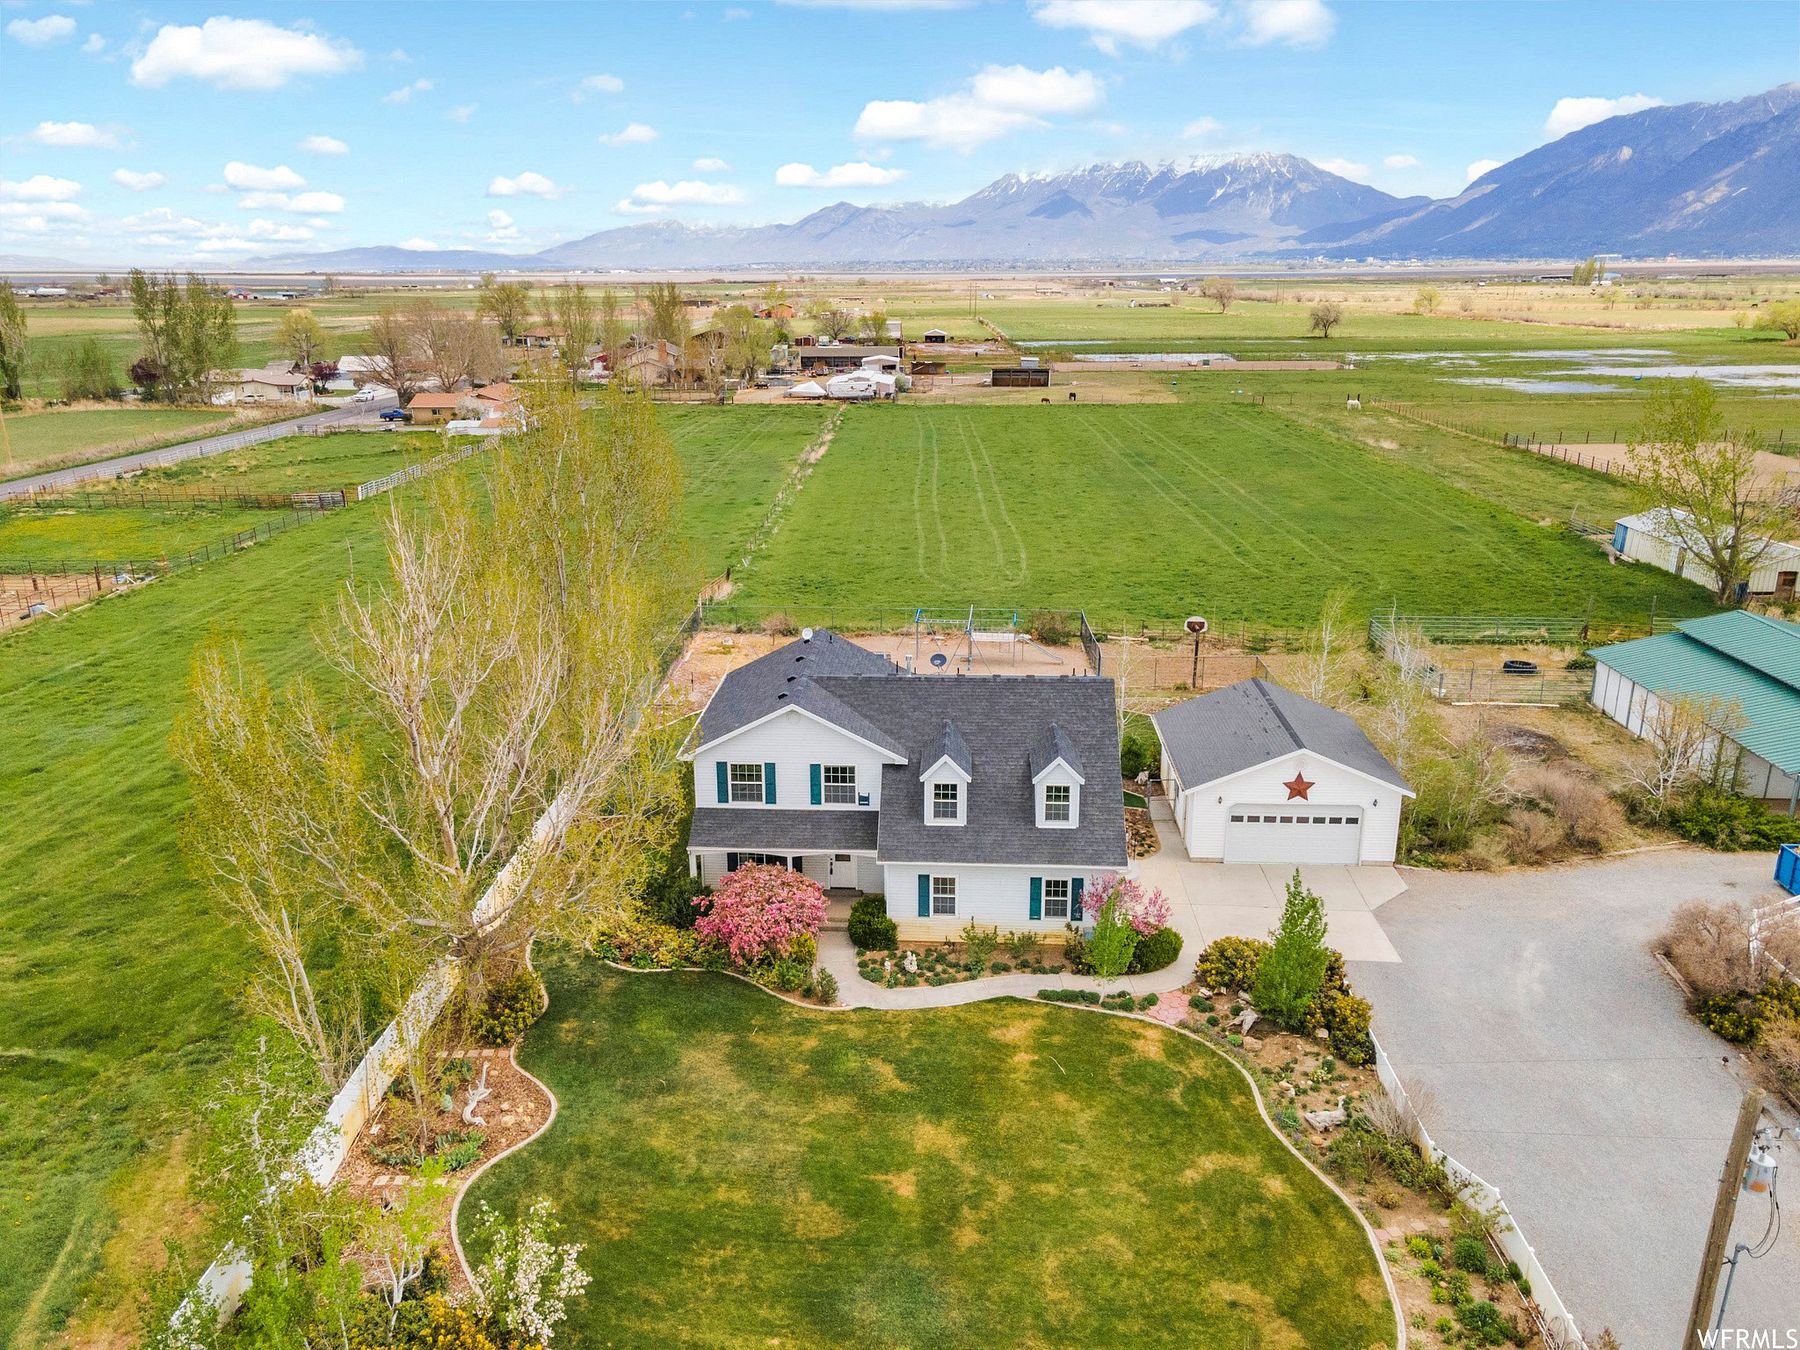 6.3 Acres of Residential Land & Home Spanish Fork, Utah, UT